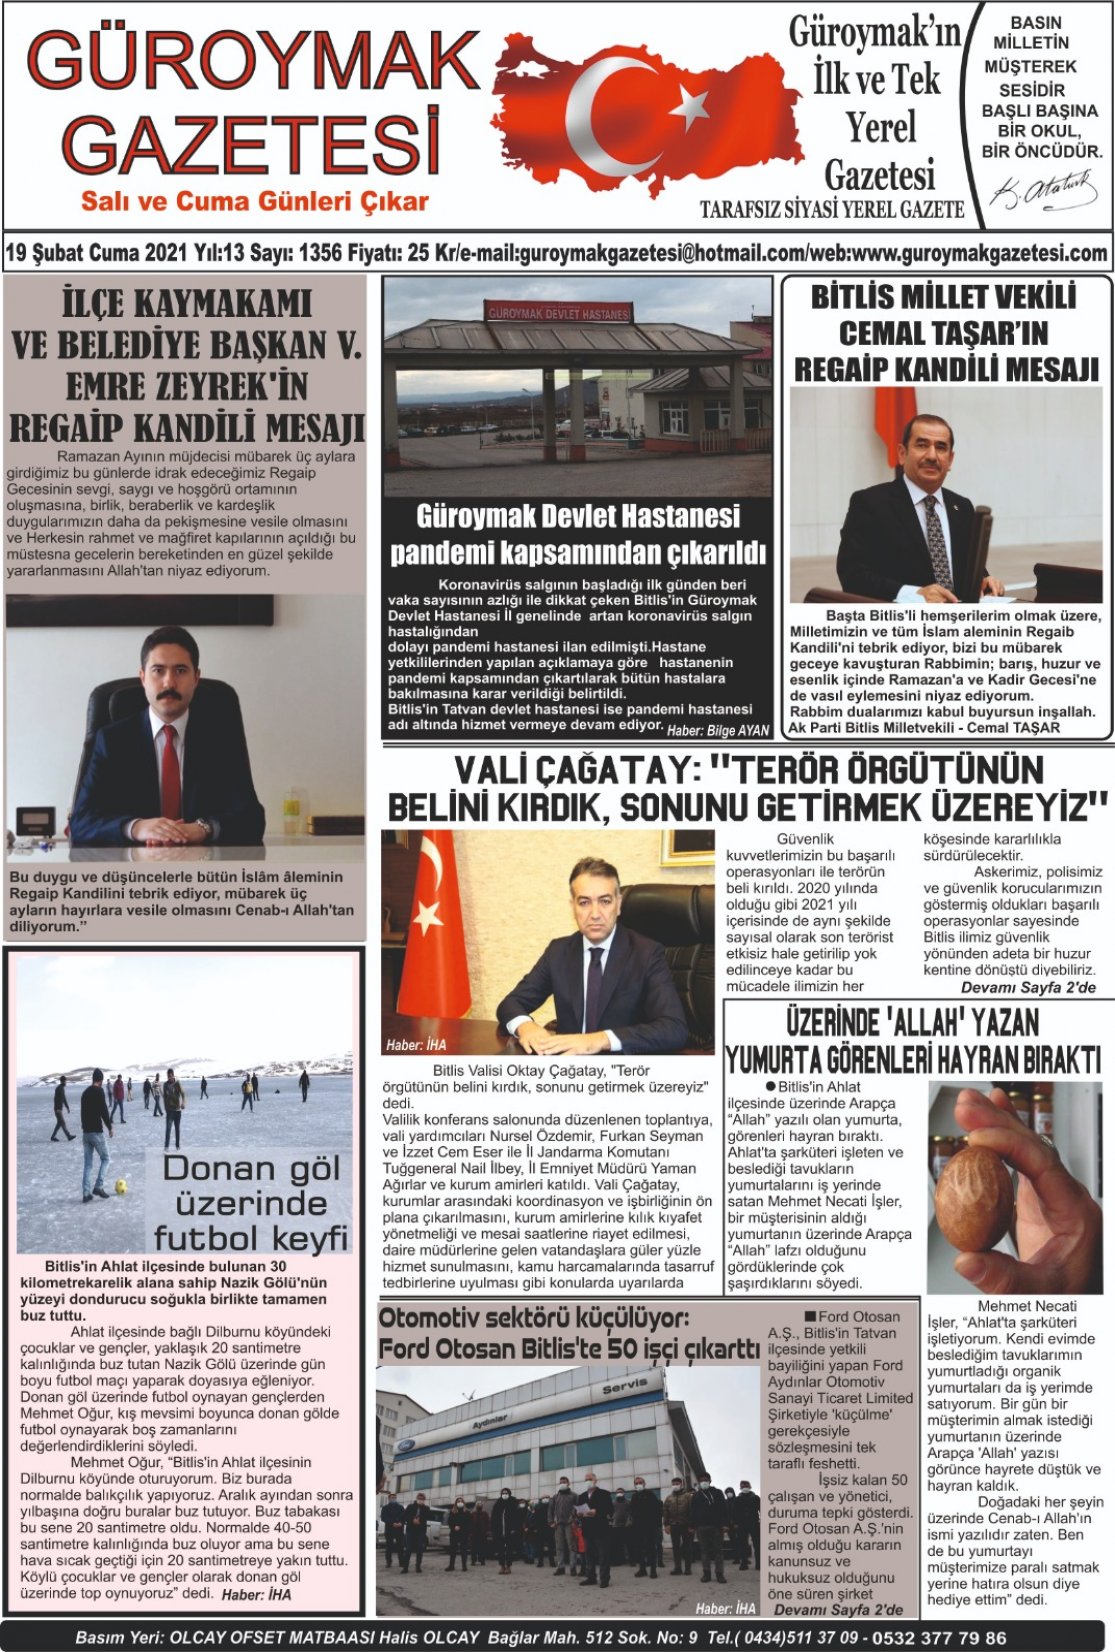 Güroymak Gazetesi D256C444-FF66-4B41-B685-7ED0D2CFA589.jpeg Sayılı Gazete Küpürü